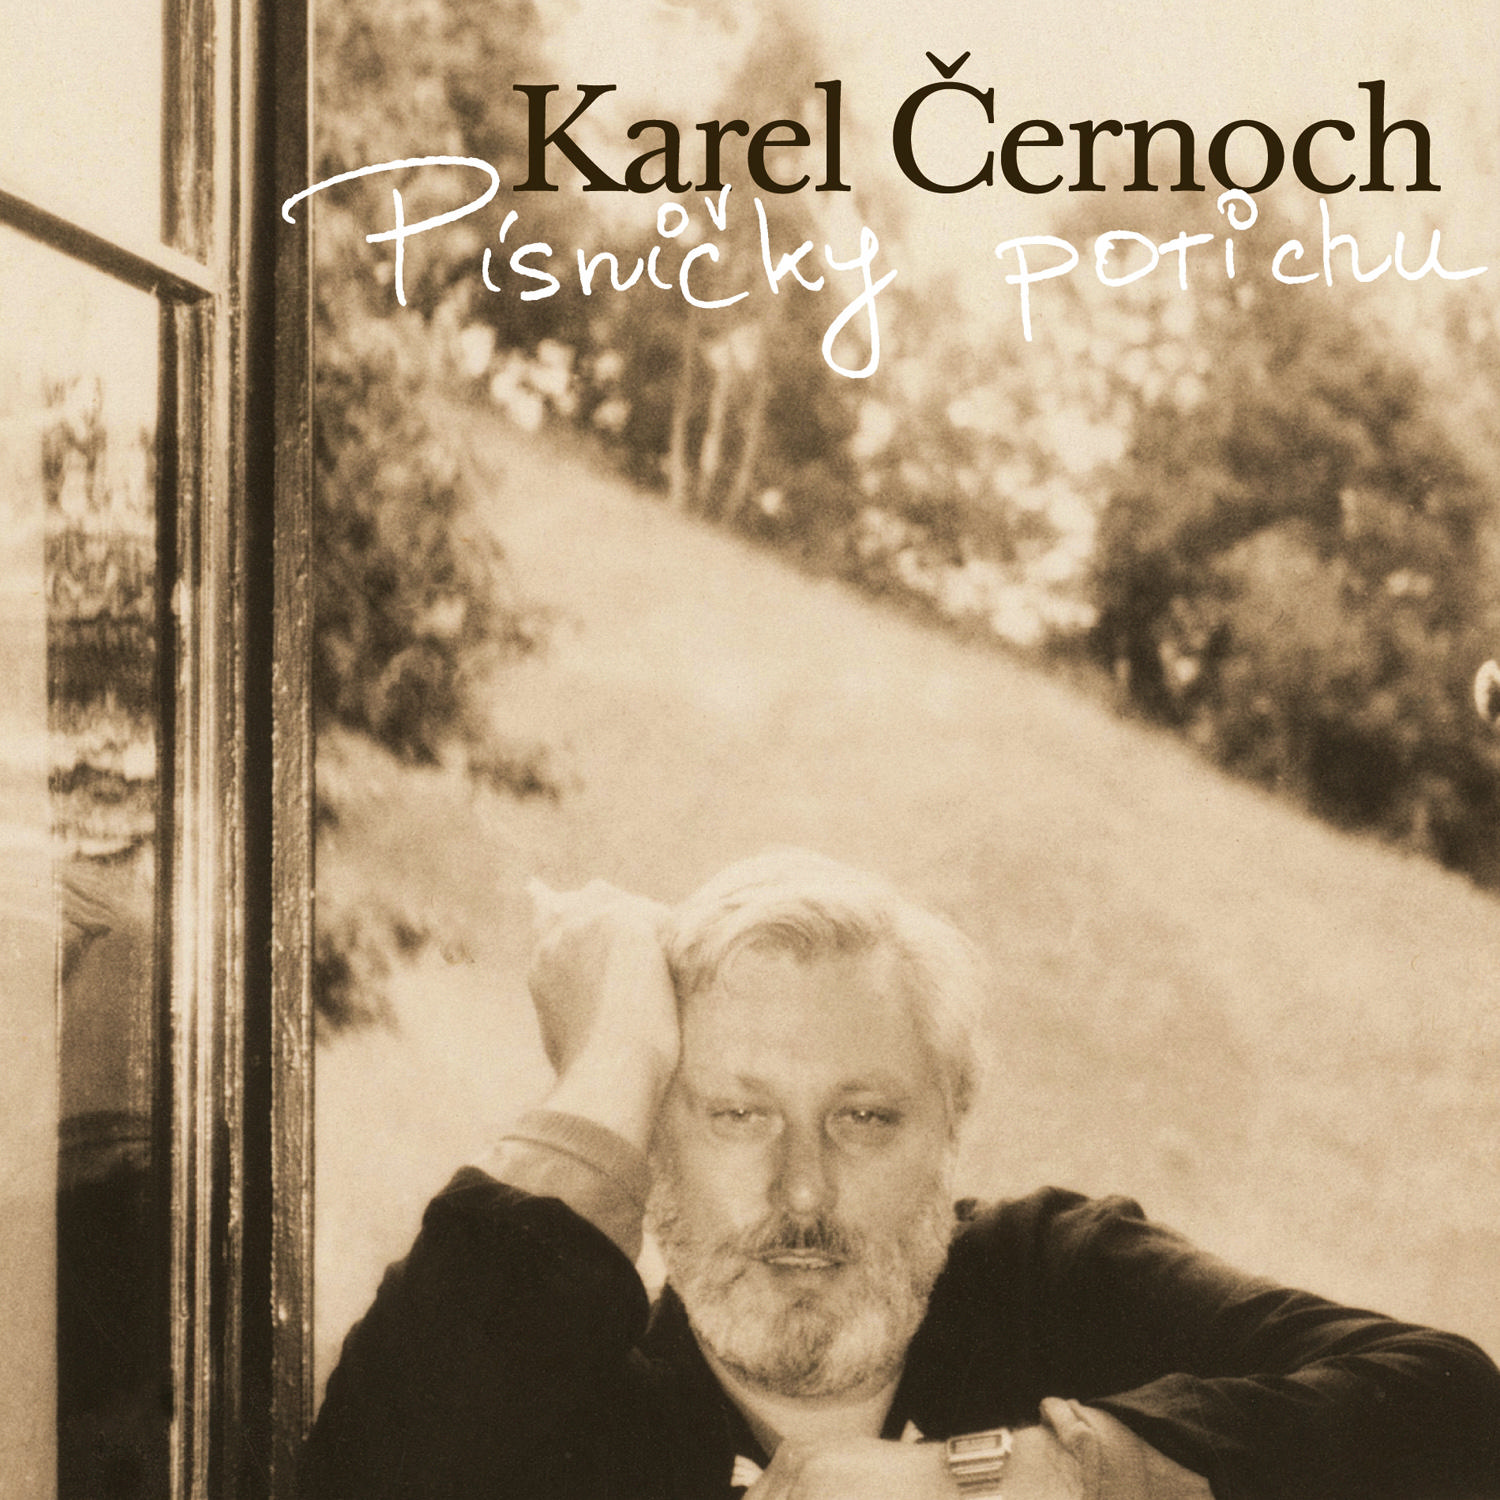 CD Shop - CERNOCH KAREL PISNICKY POTICHU